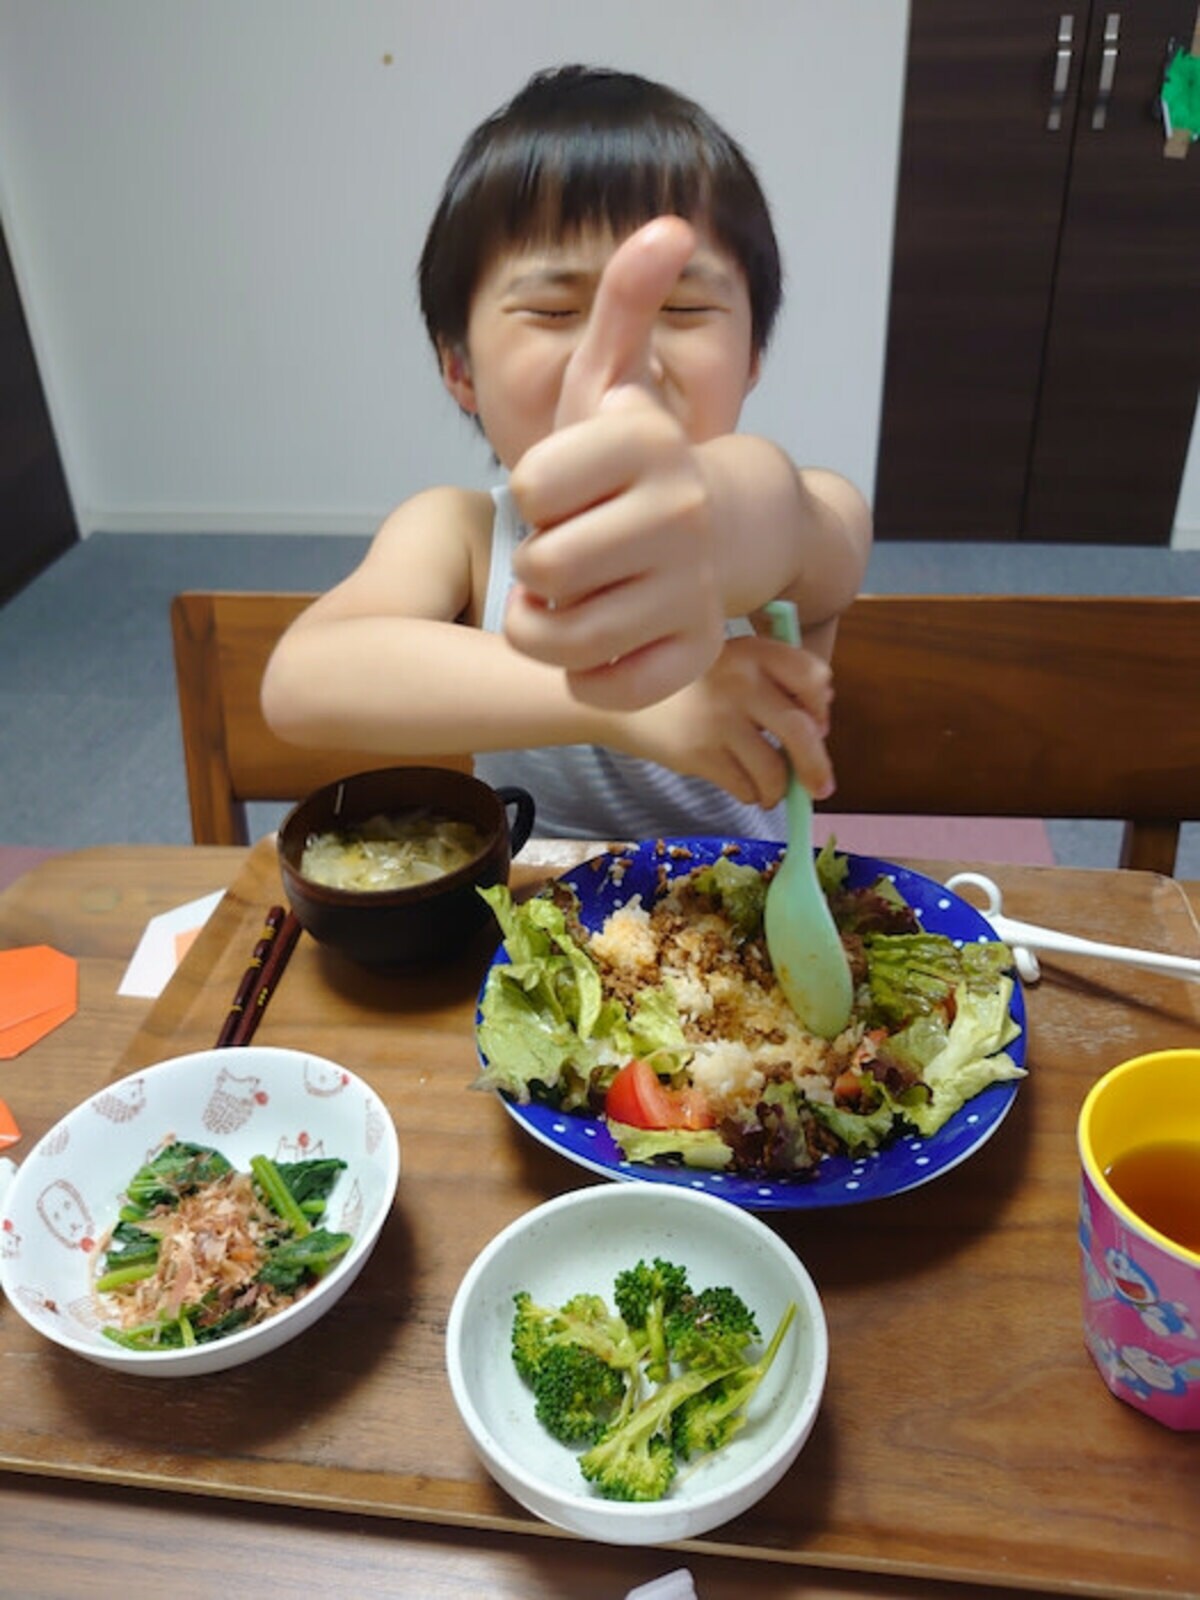 山田花子、息子達が完食した手料理を公開「お店出したら、流行るわね 